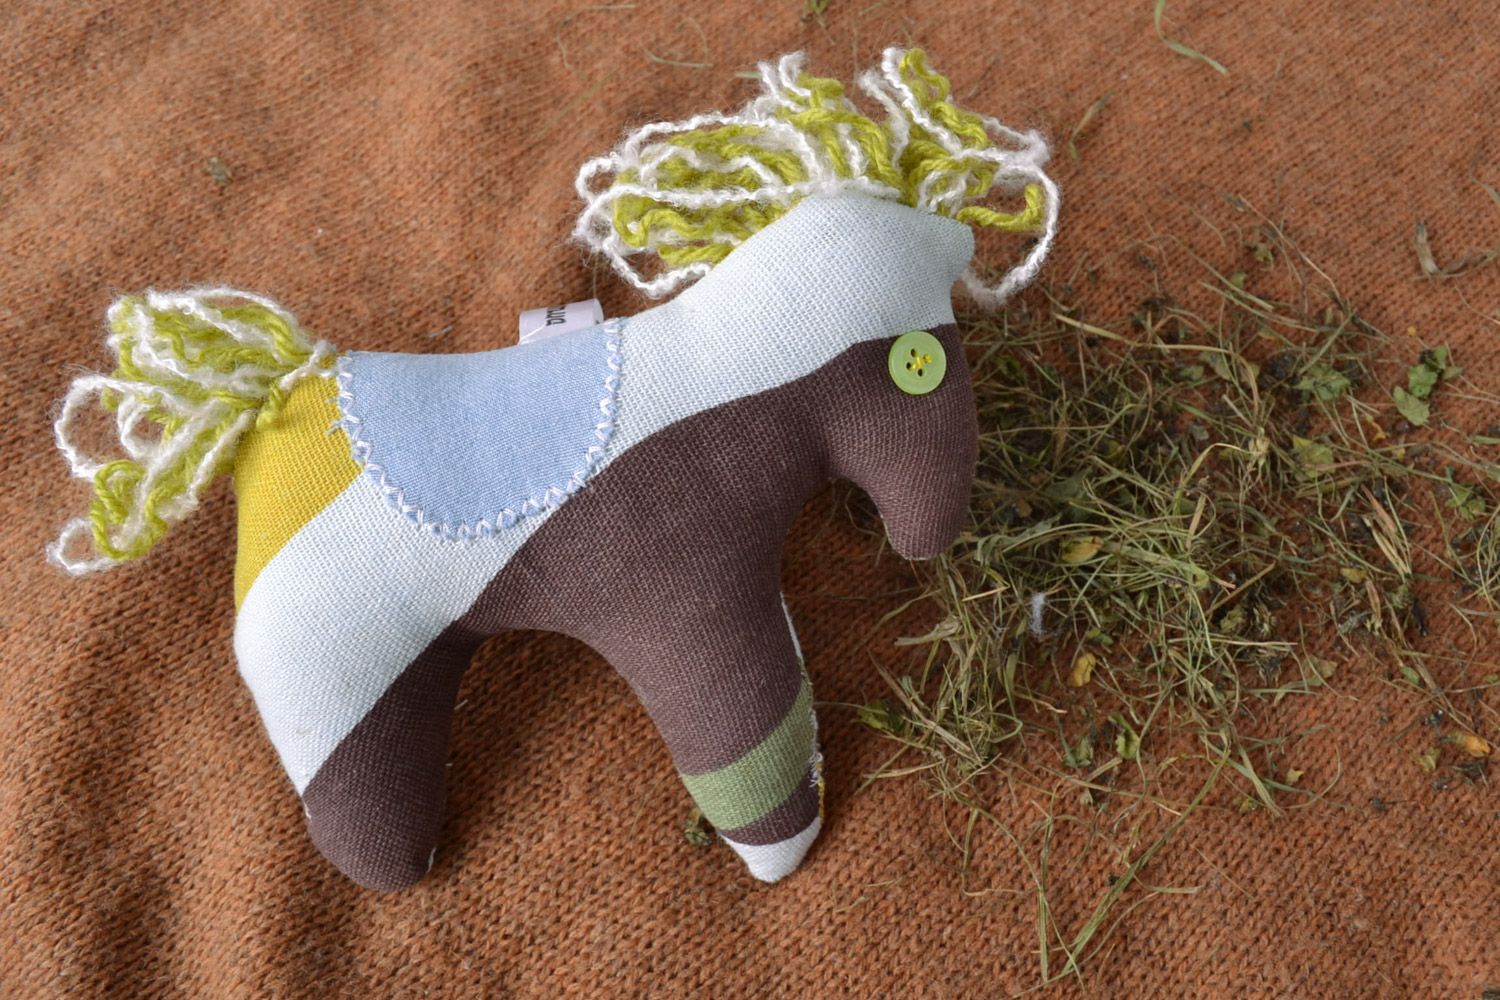 Текстильная мягкая игрушка ручной работы Конь красивая авторская дизайнерская фото 1